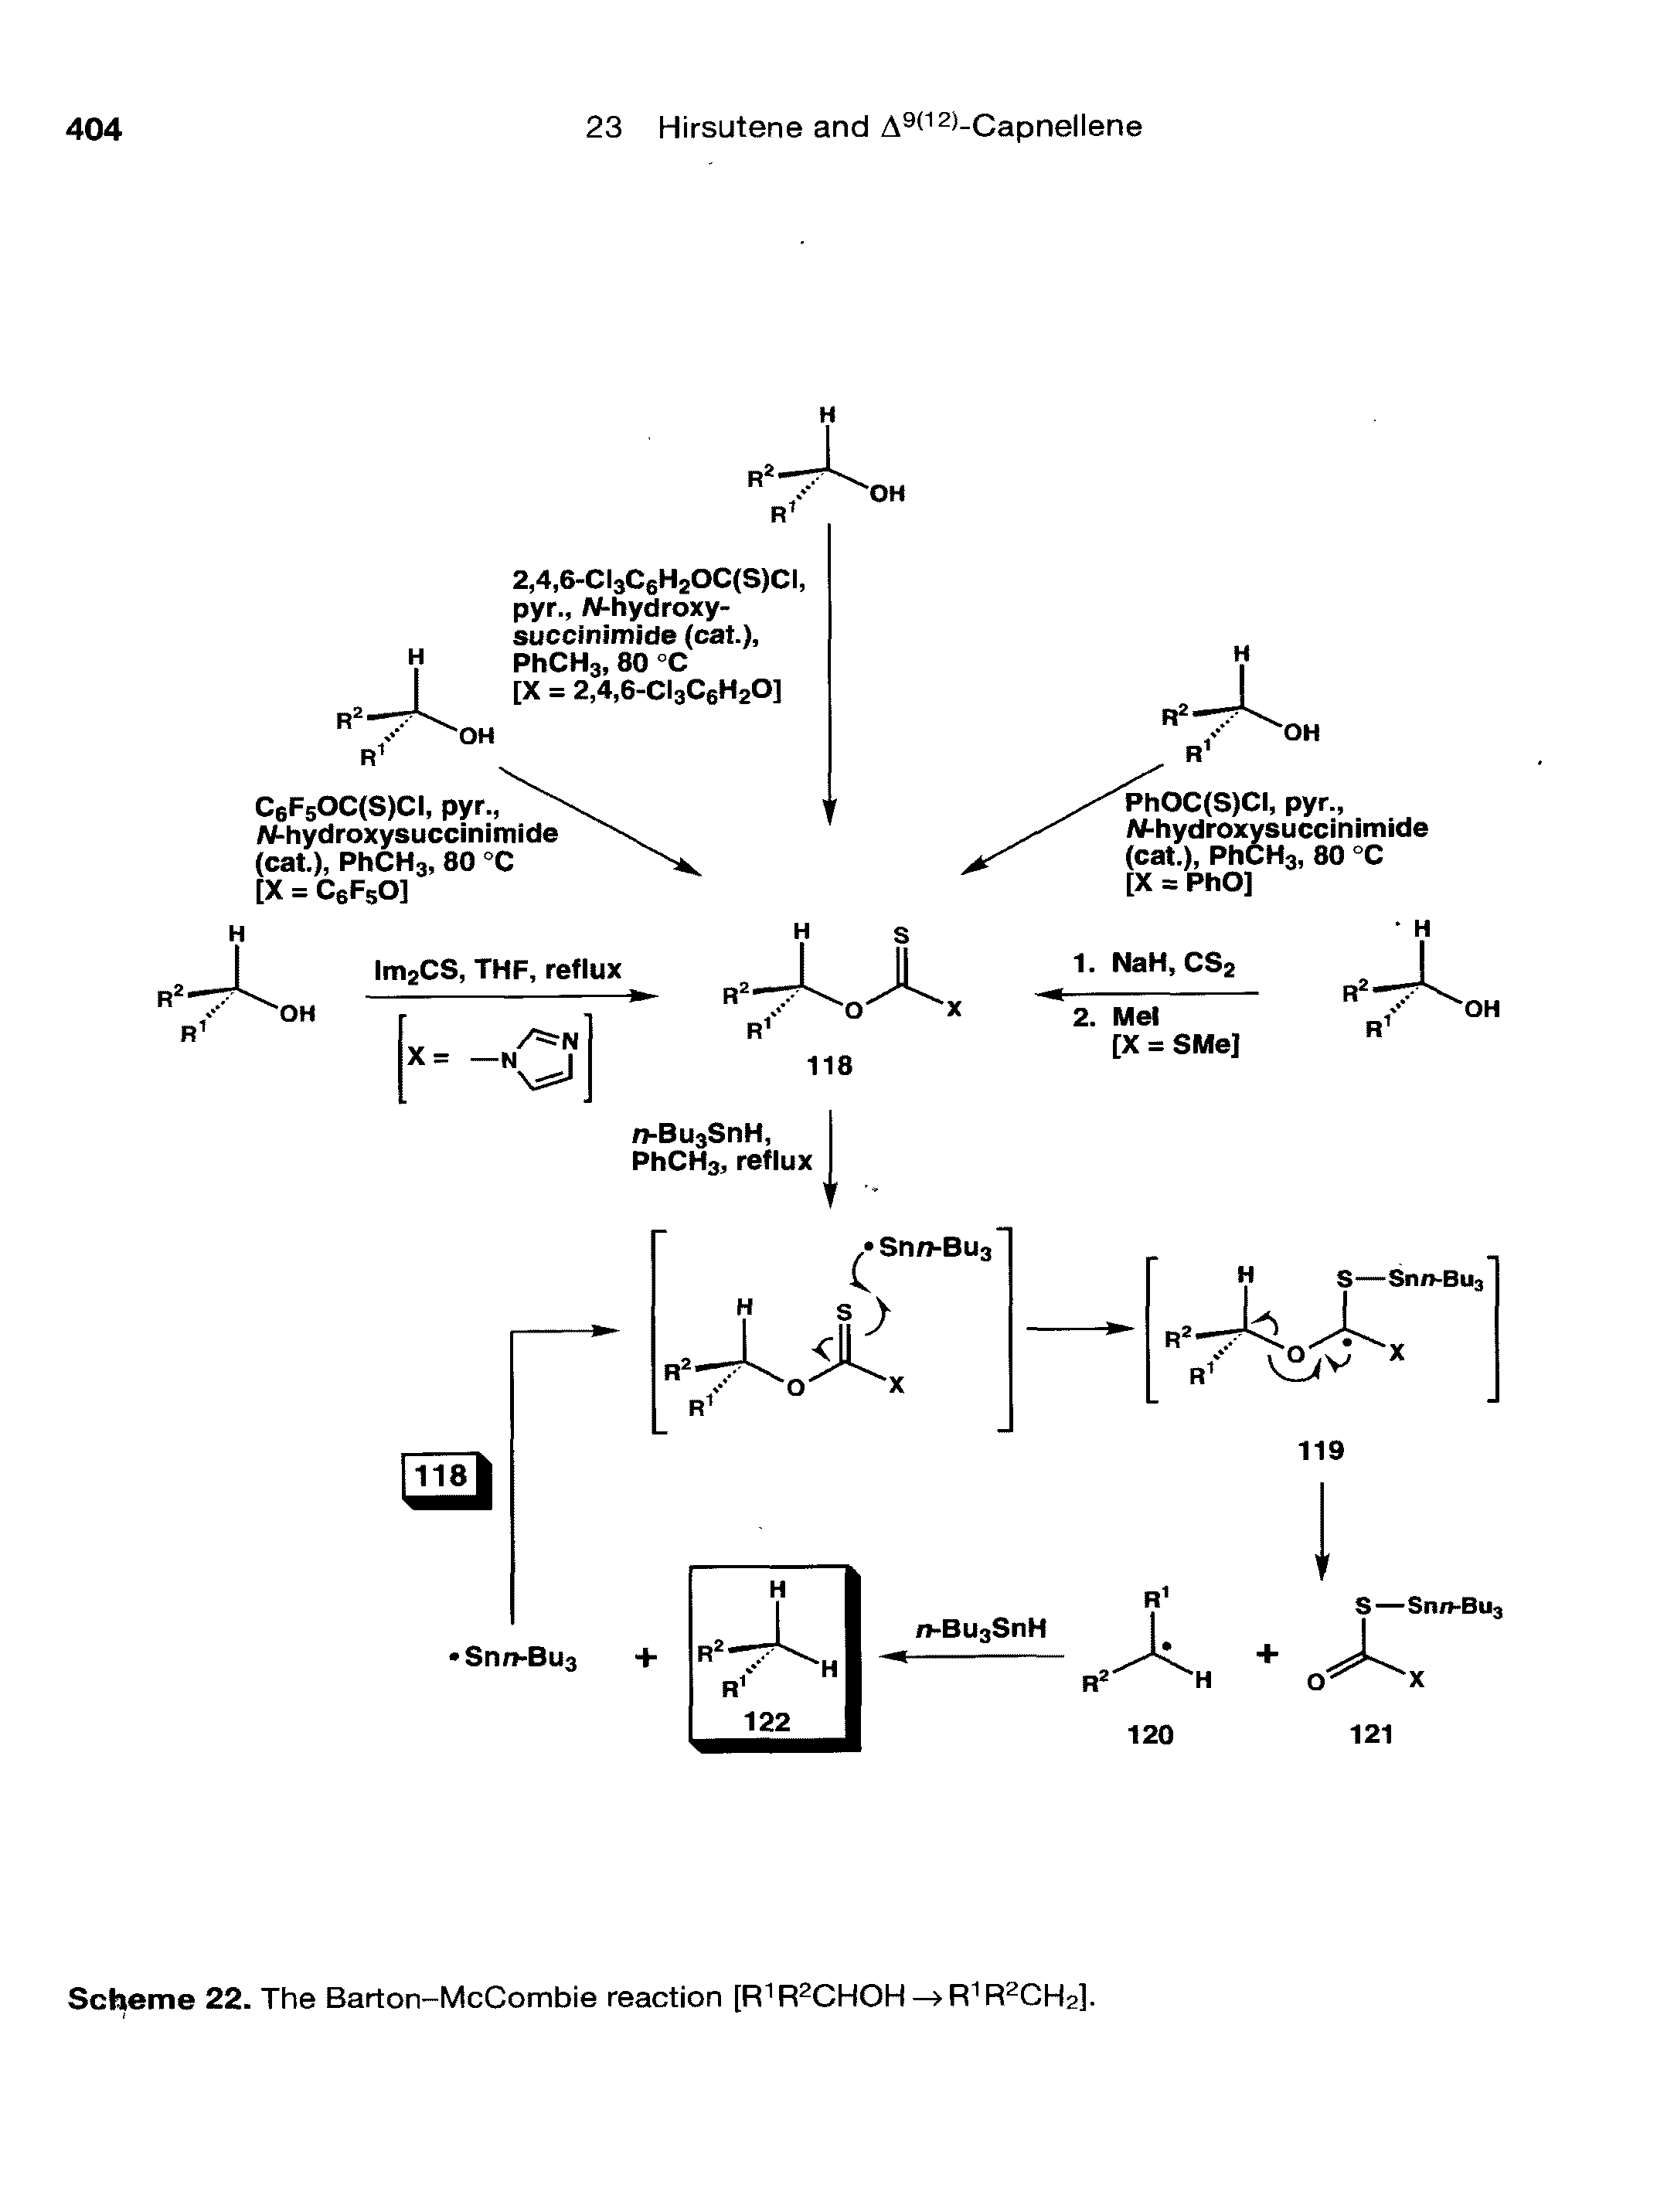 Scheme 22. The Barton-McCombie reaction [R1R2CHOH— R1R2CH2].